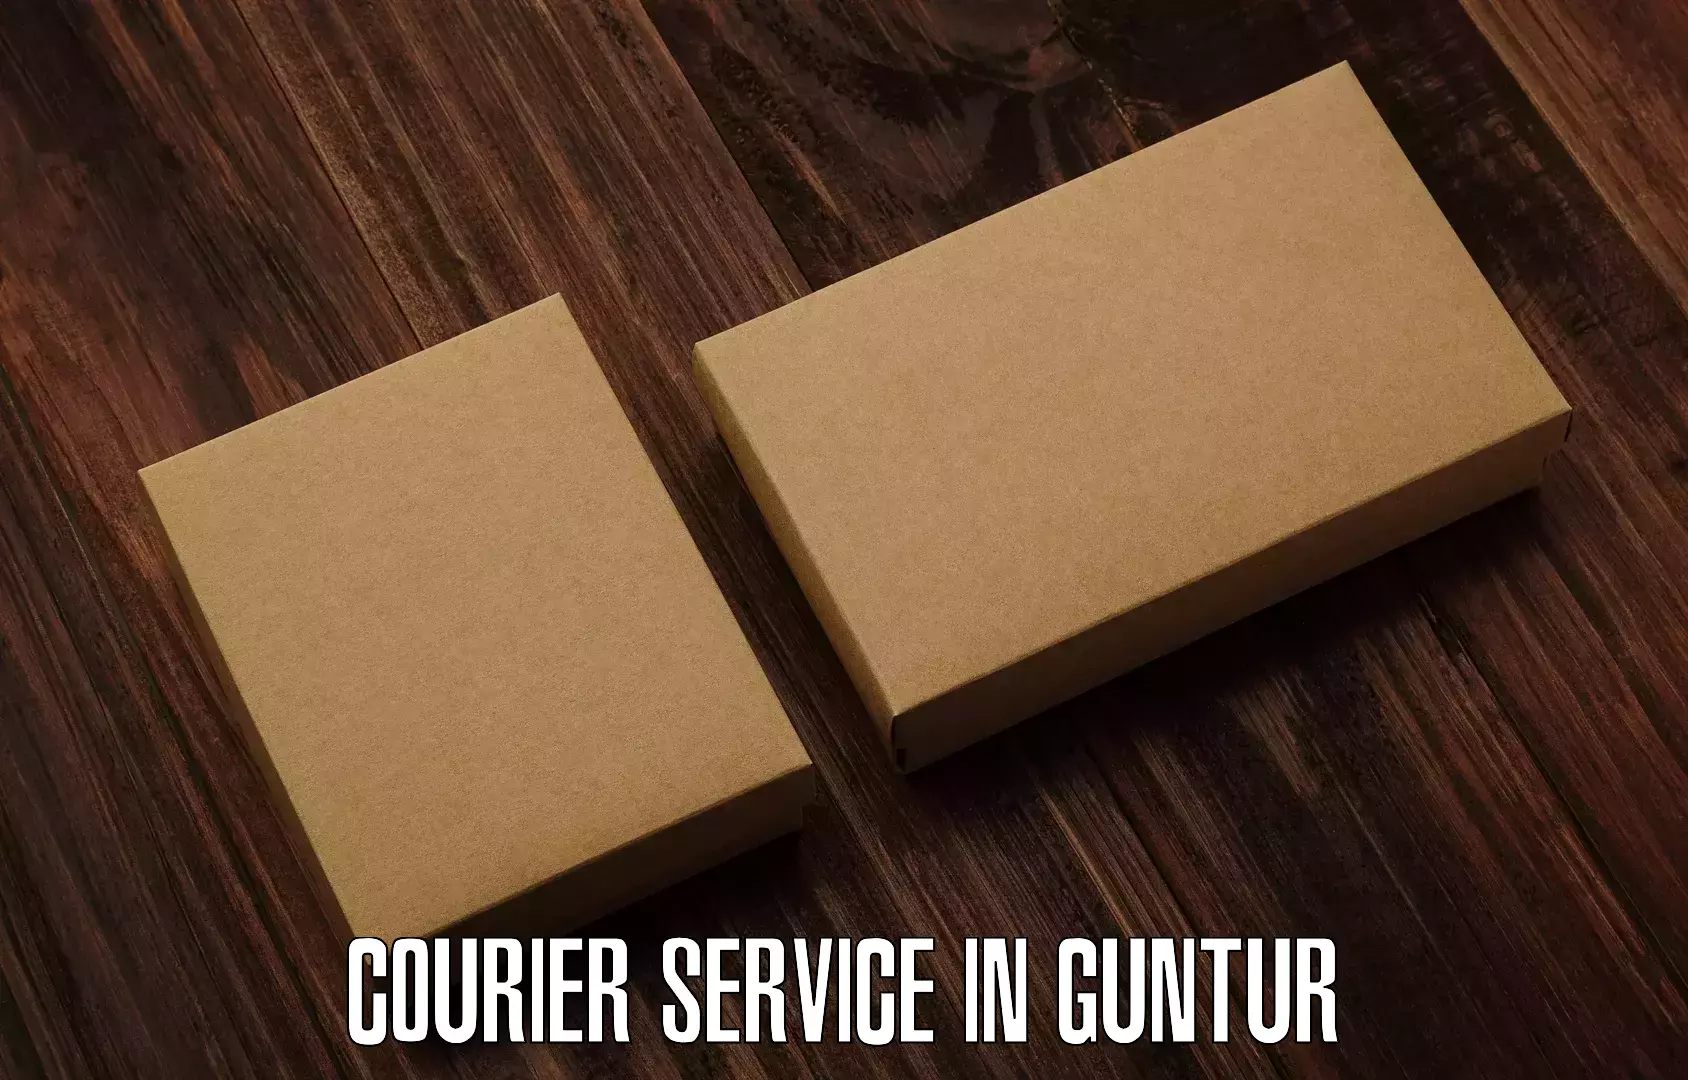 24/7 courier service in Guntur